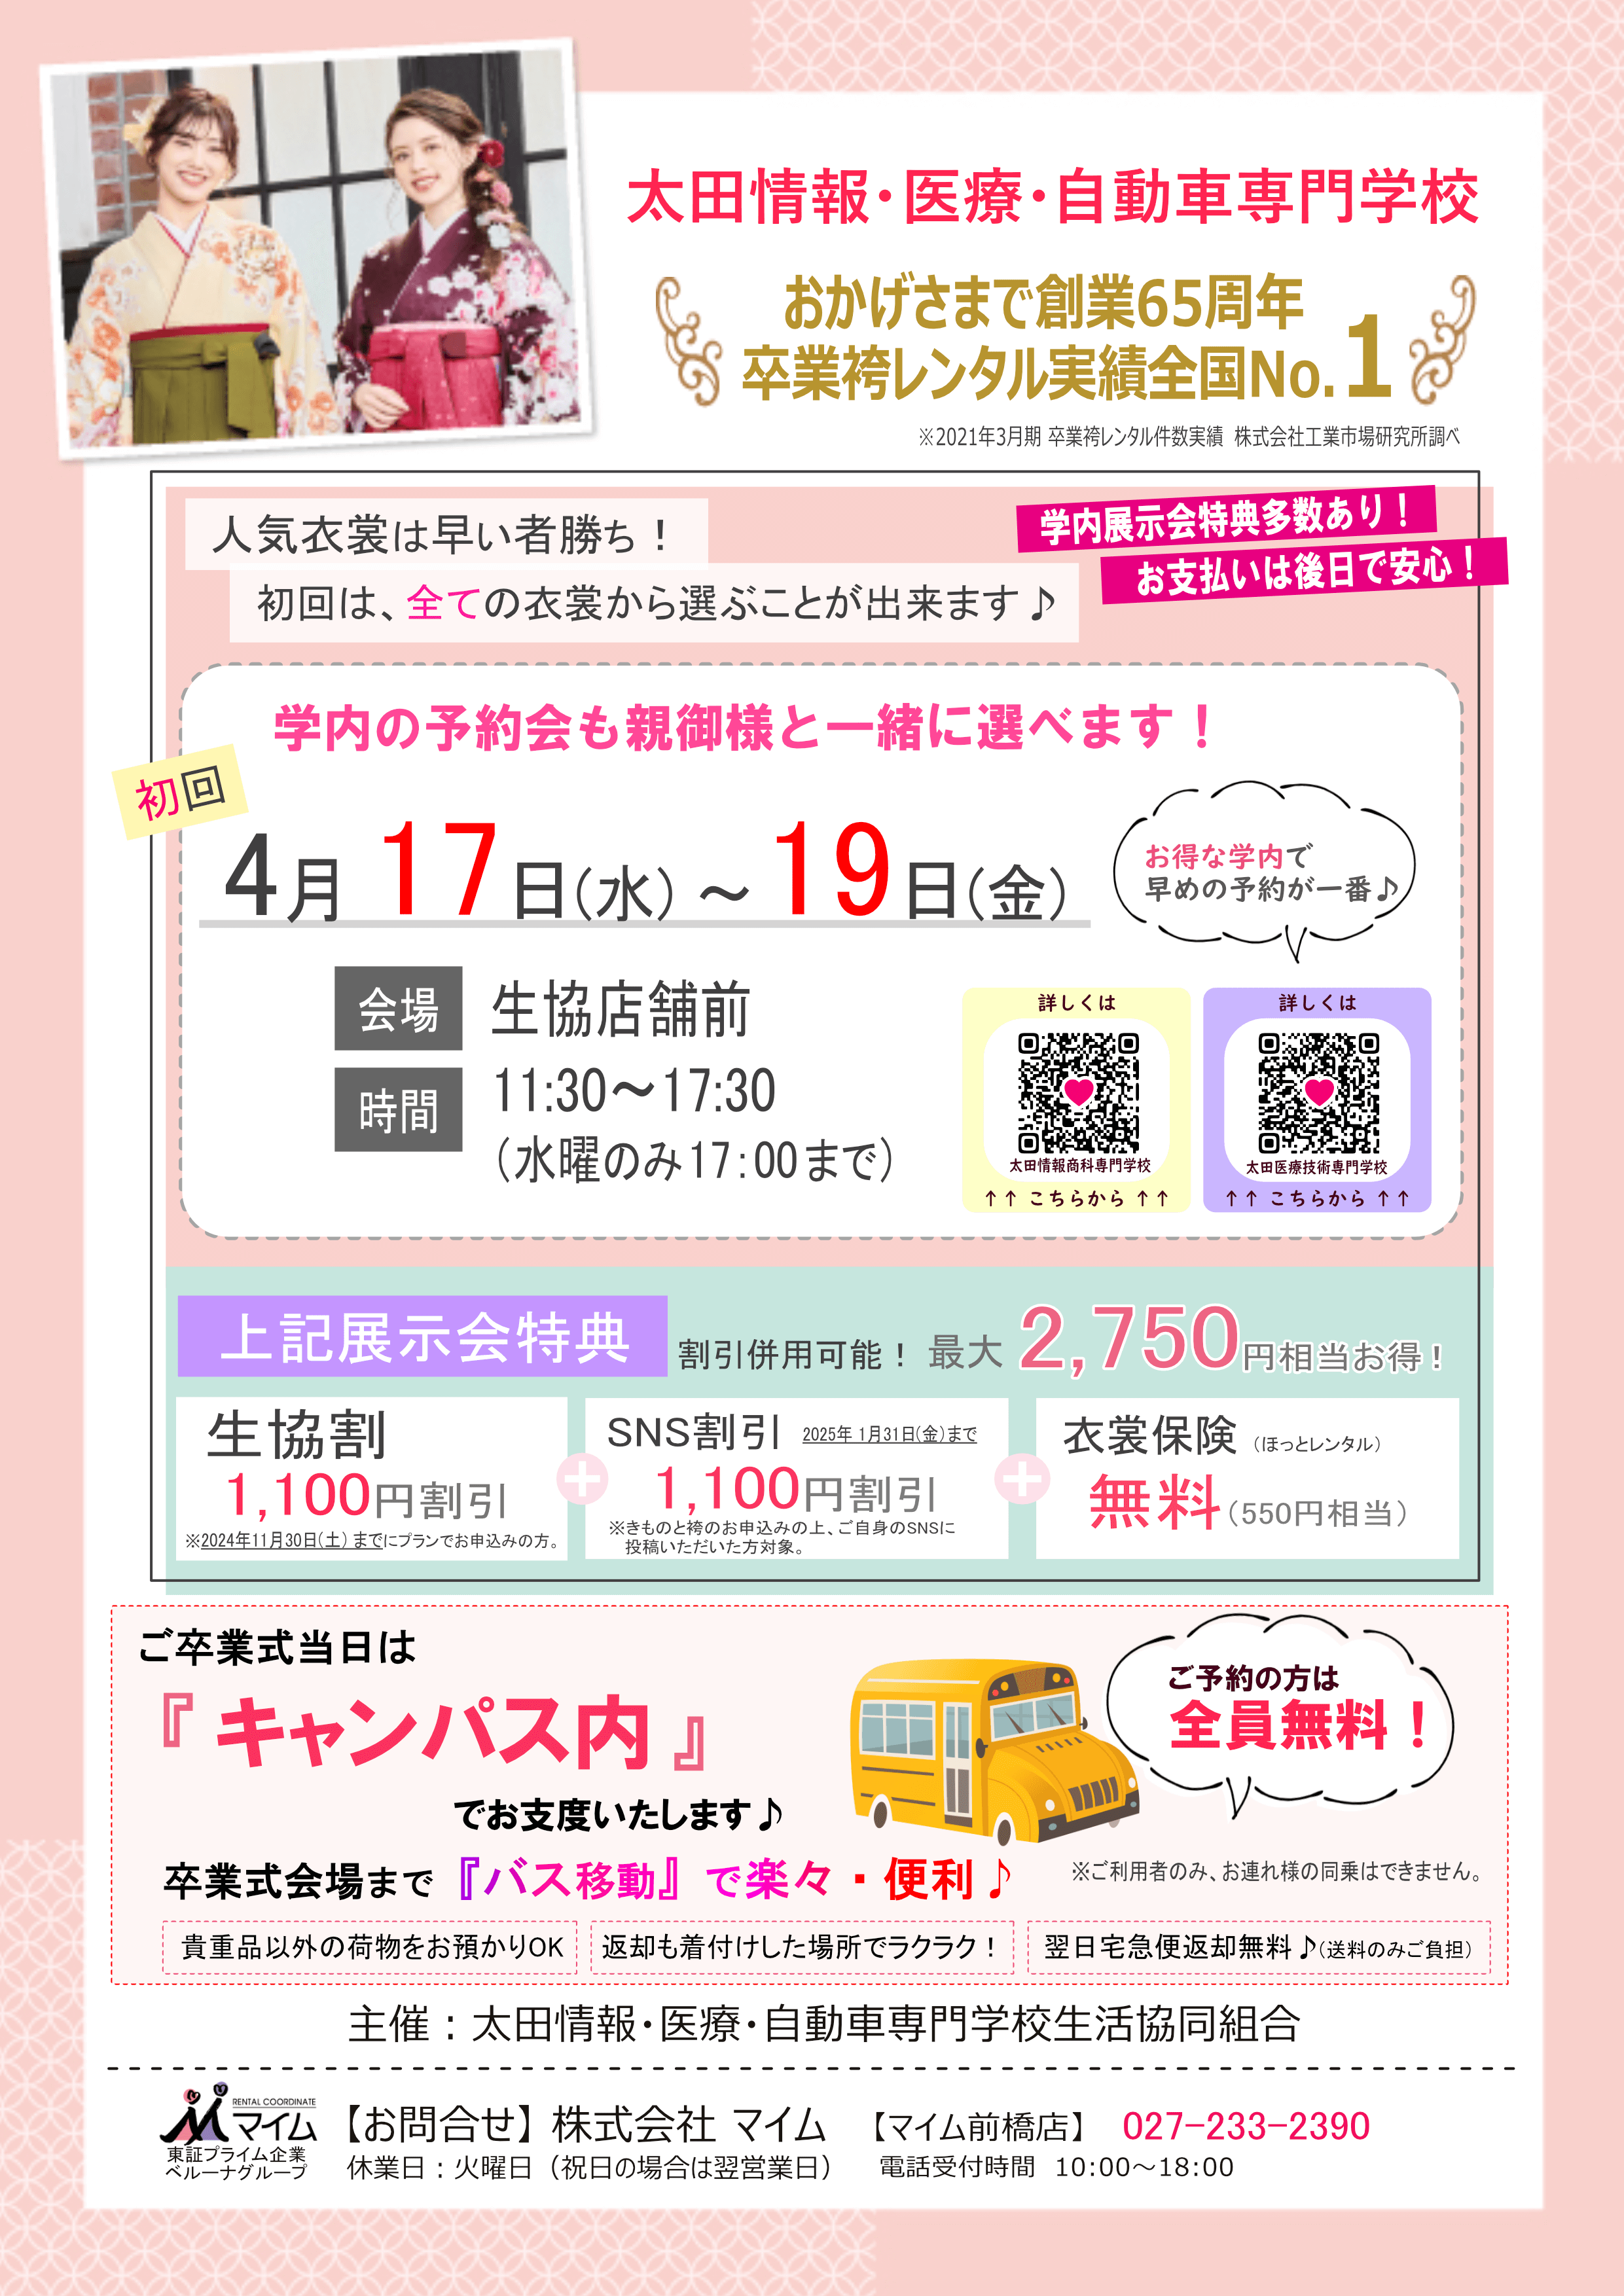 太田情報・医療・自動車専門学校 4月